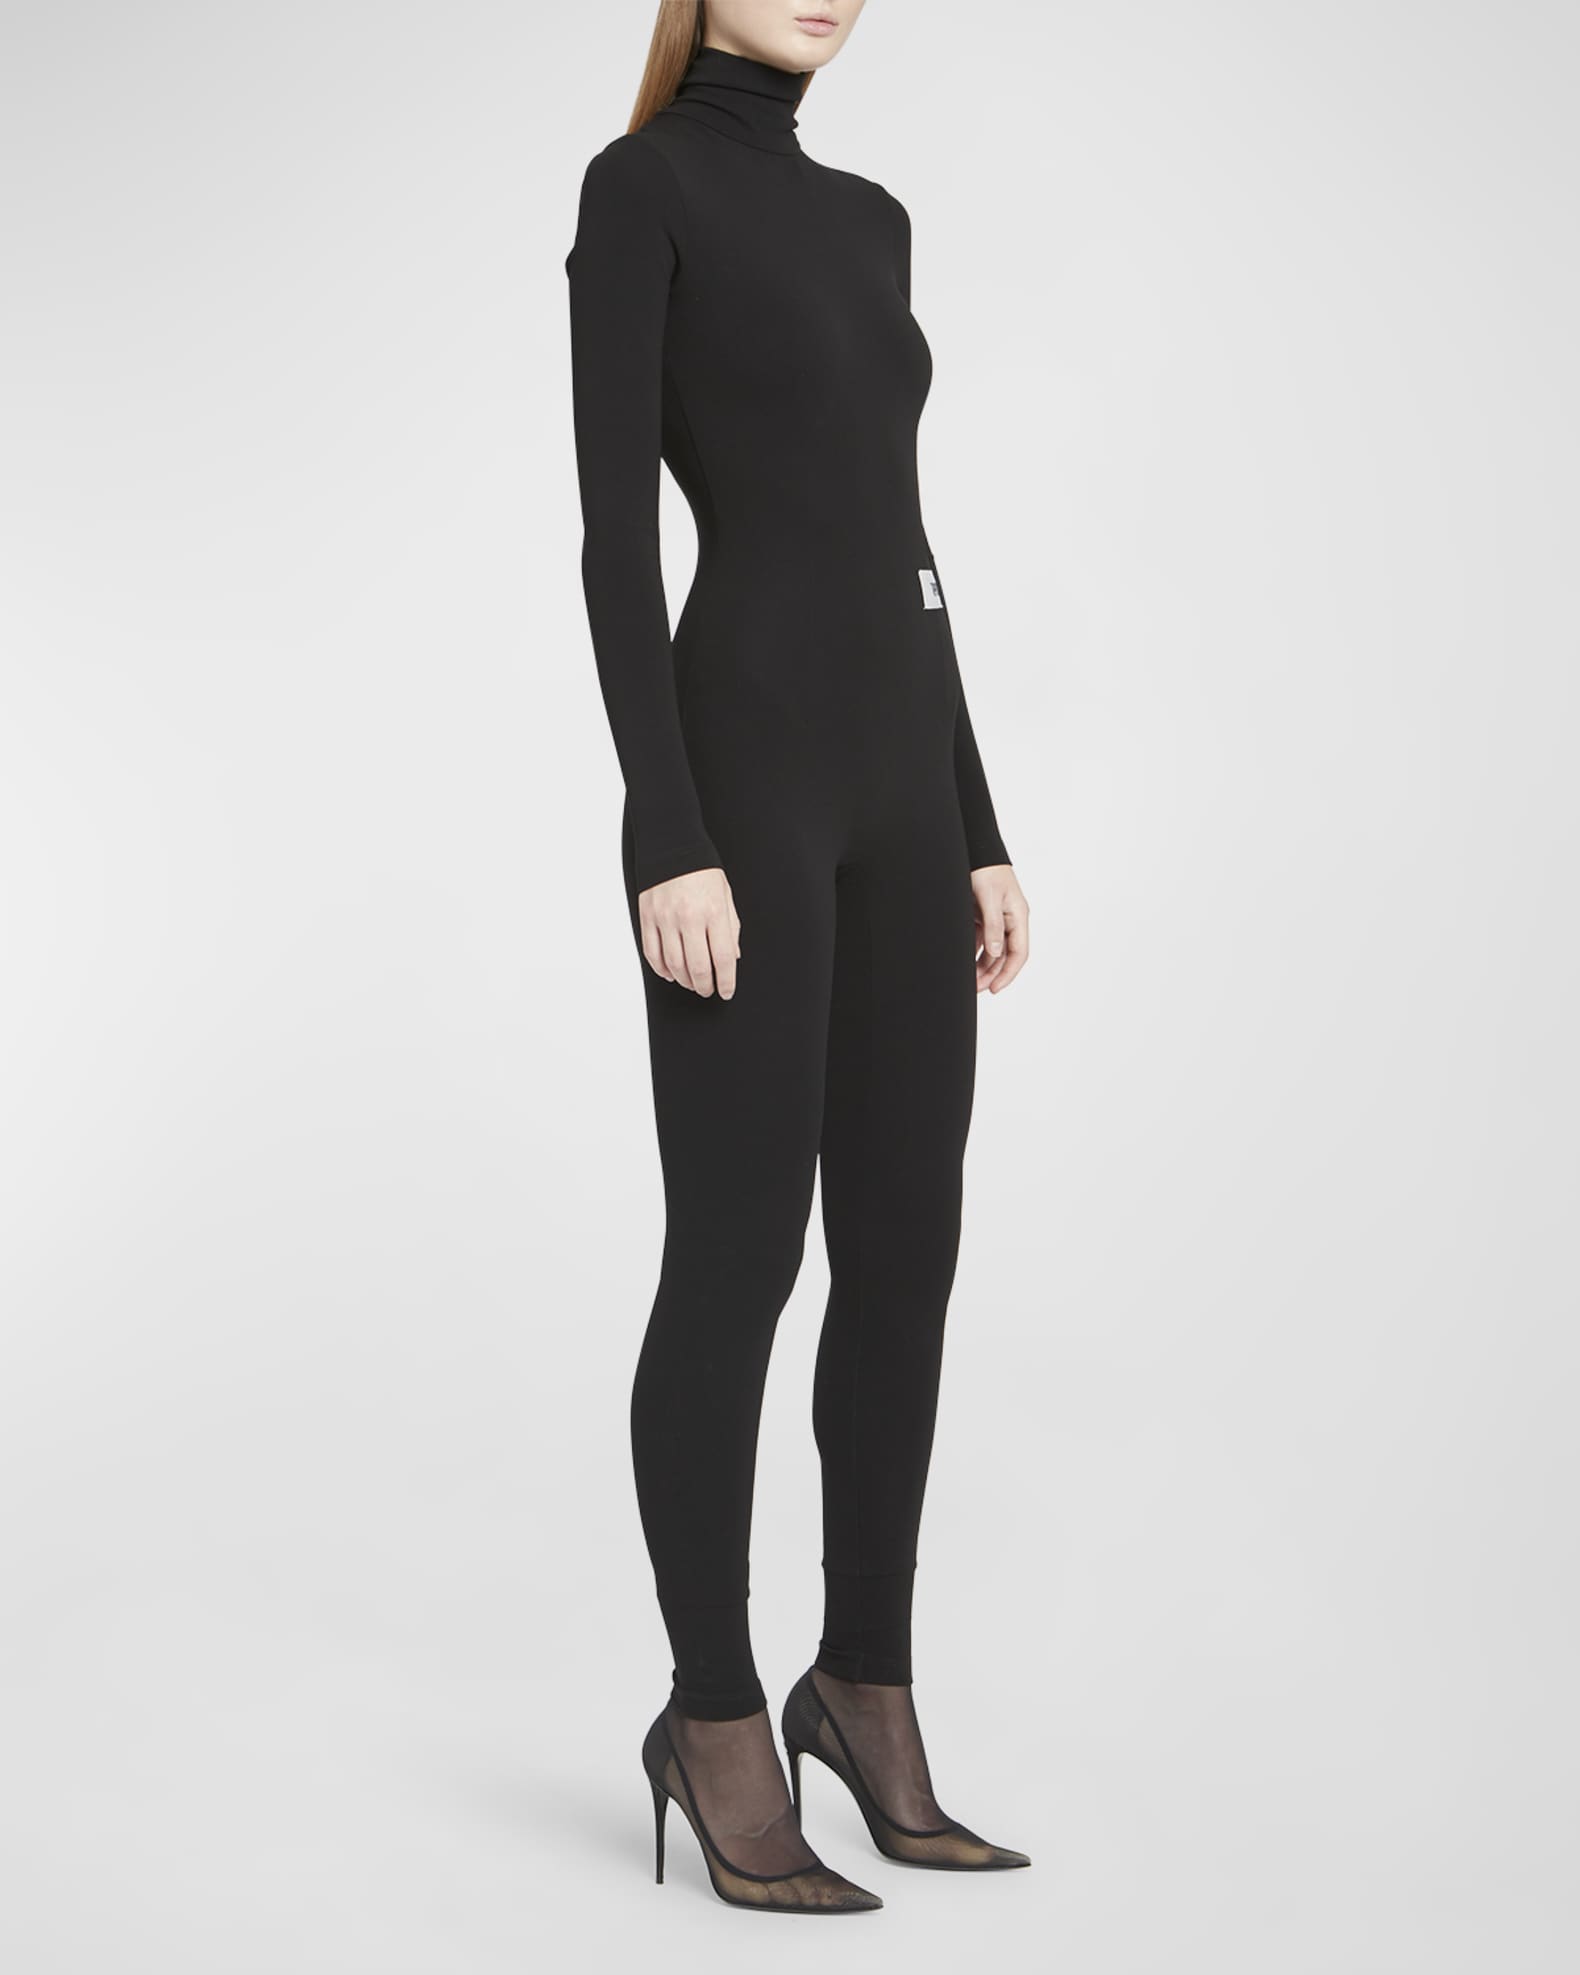 Louis Vuitton, Pants & Jumpsuits, Louis Vuitton Shiny Monogram Leggings  38